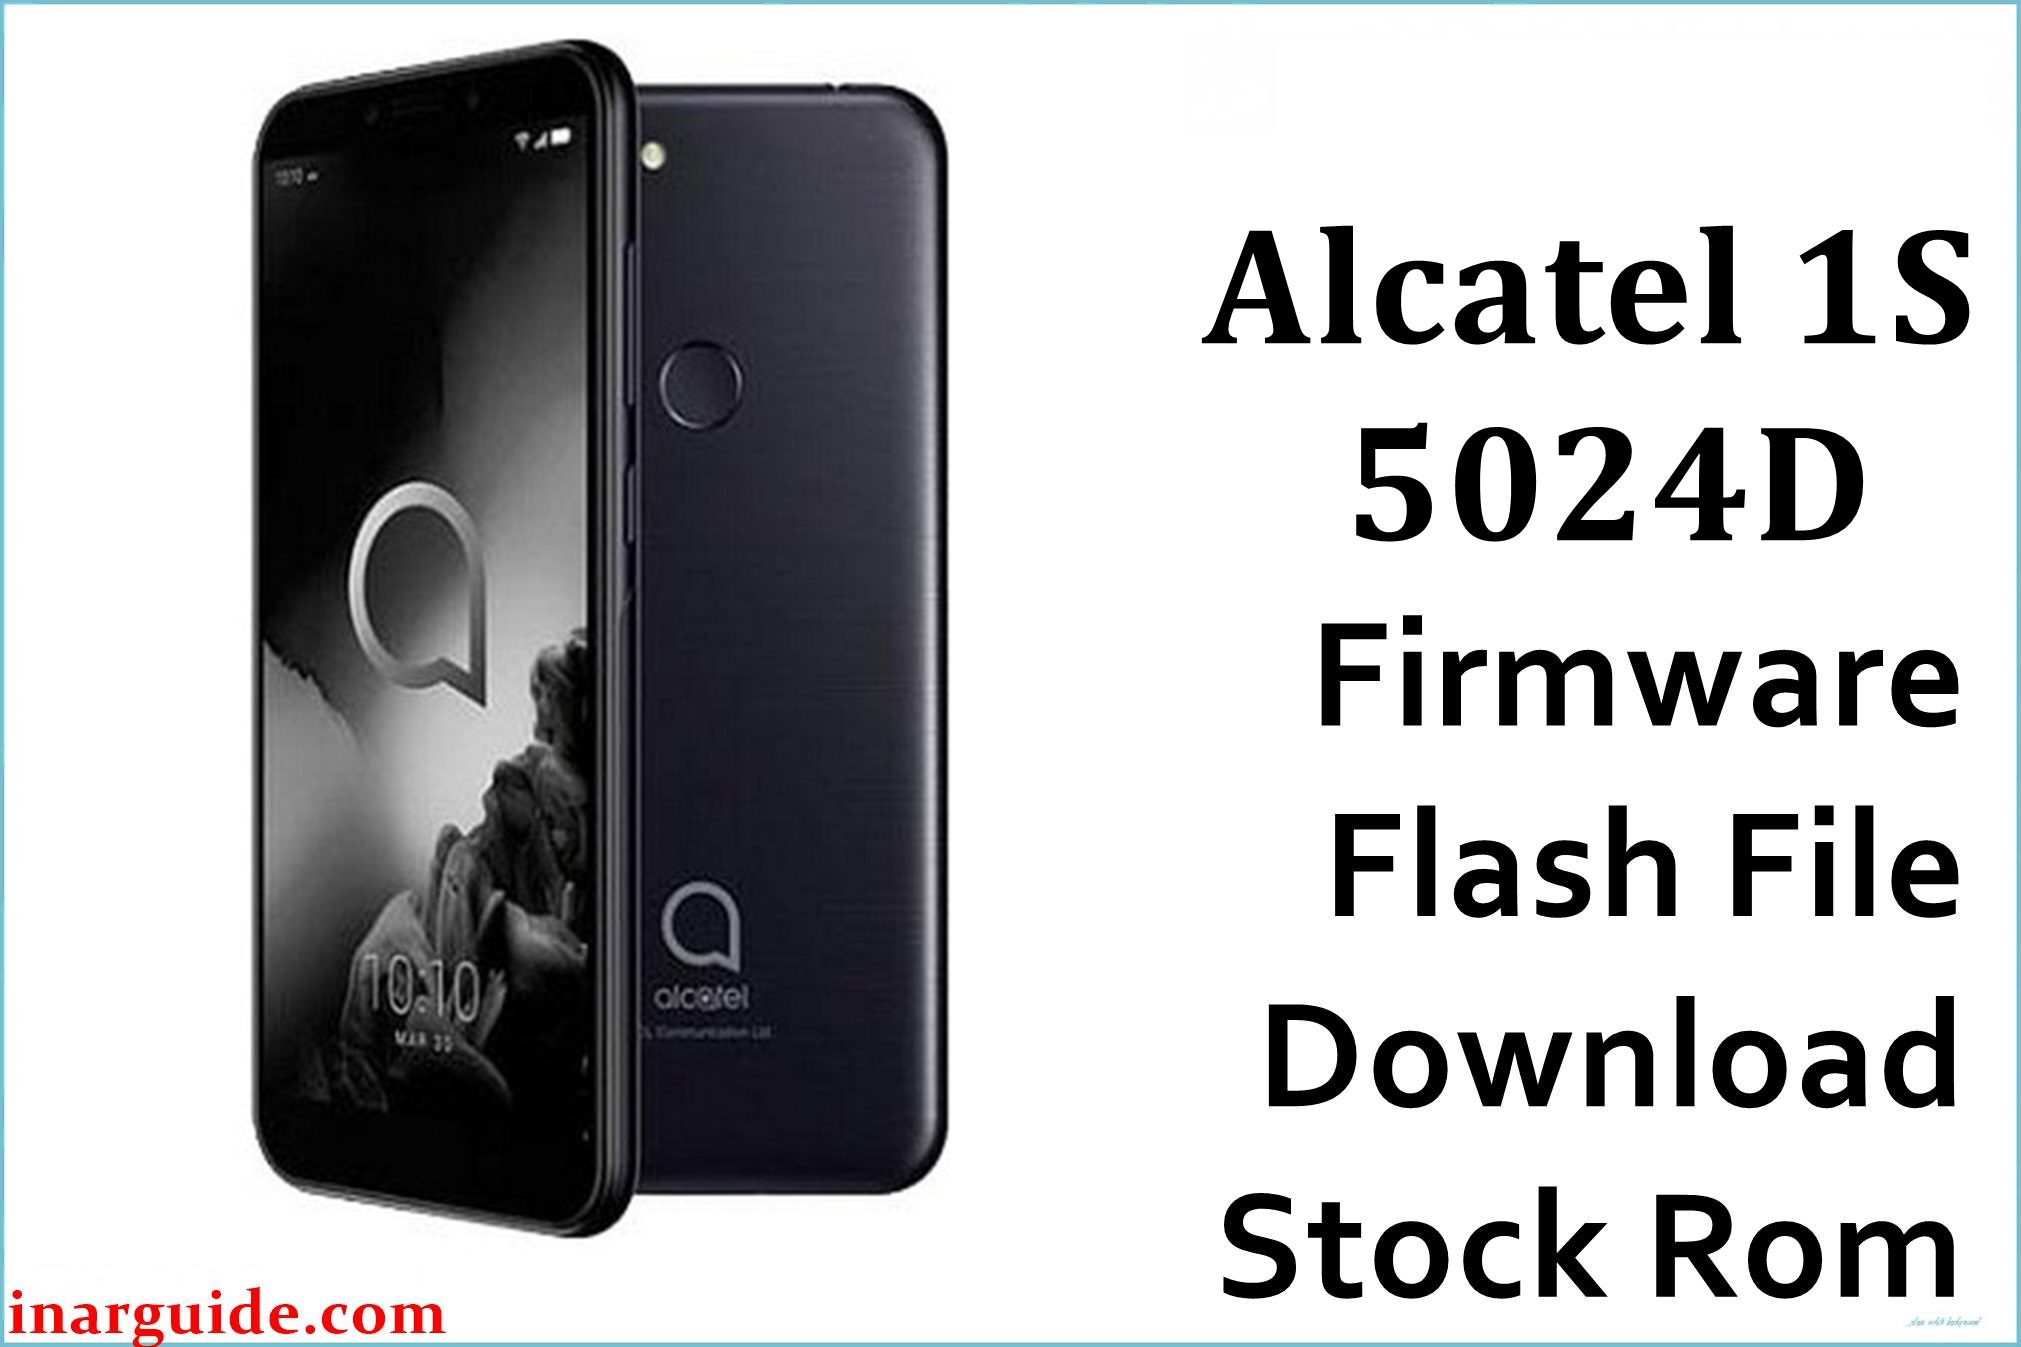 Alcatel 1S 5024D